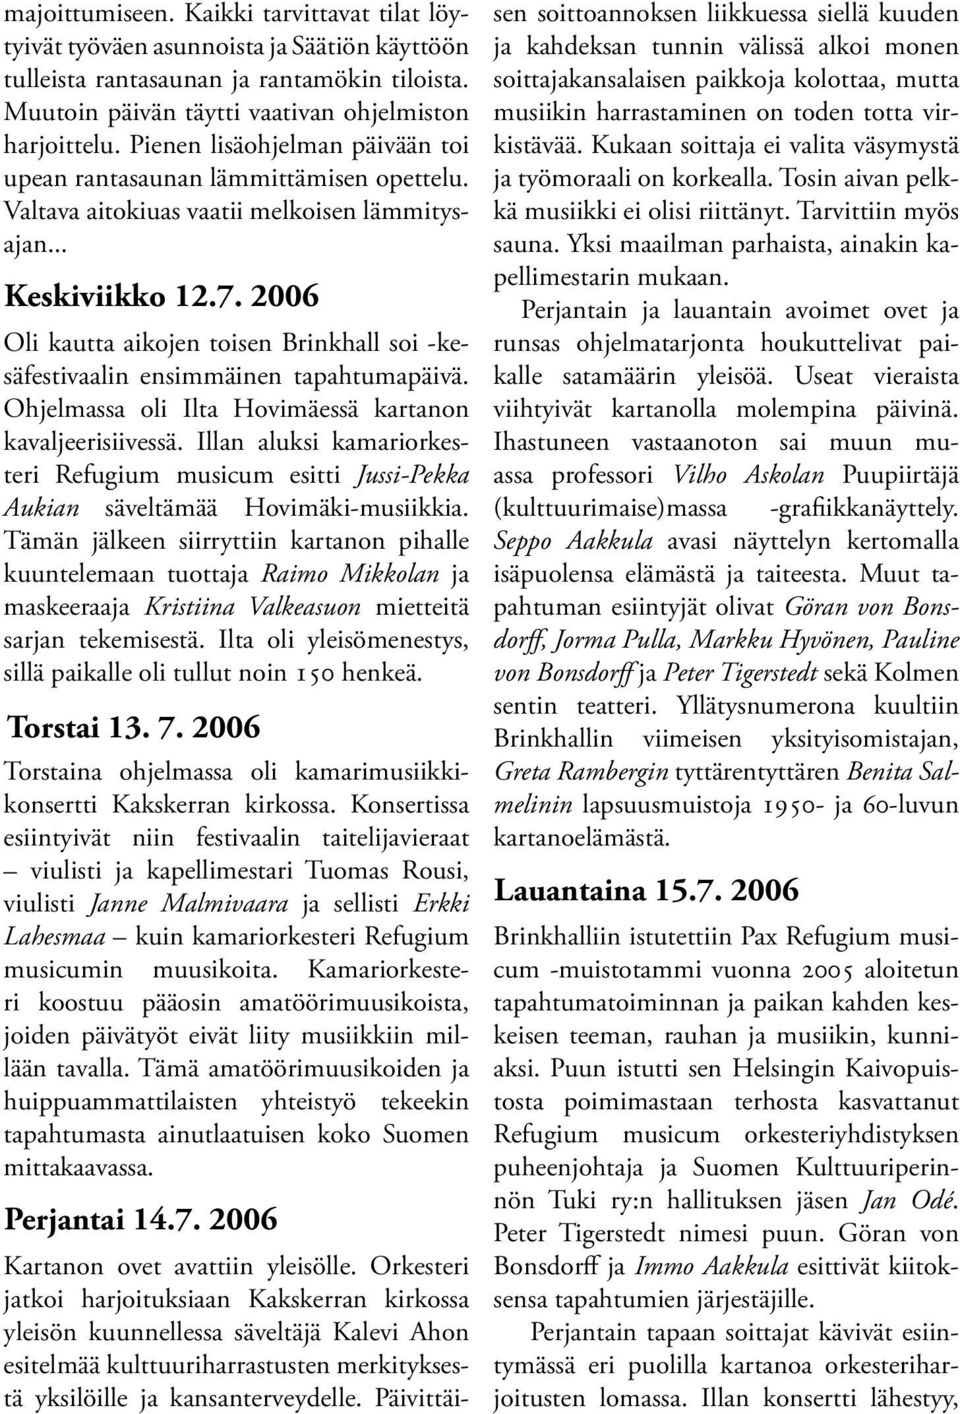 2006 Oli kautta aikojen toisen Brinkhall soi -kesäfestivaalin ensimmäinen tapahtumapäivä. Ohjelmassa oli Ilta Hovimäessä kartanon kavaljeerisiivessä.